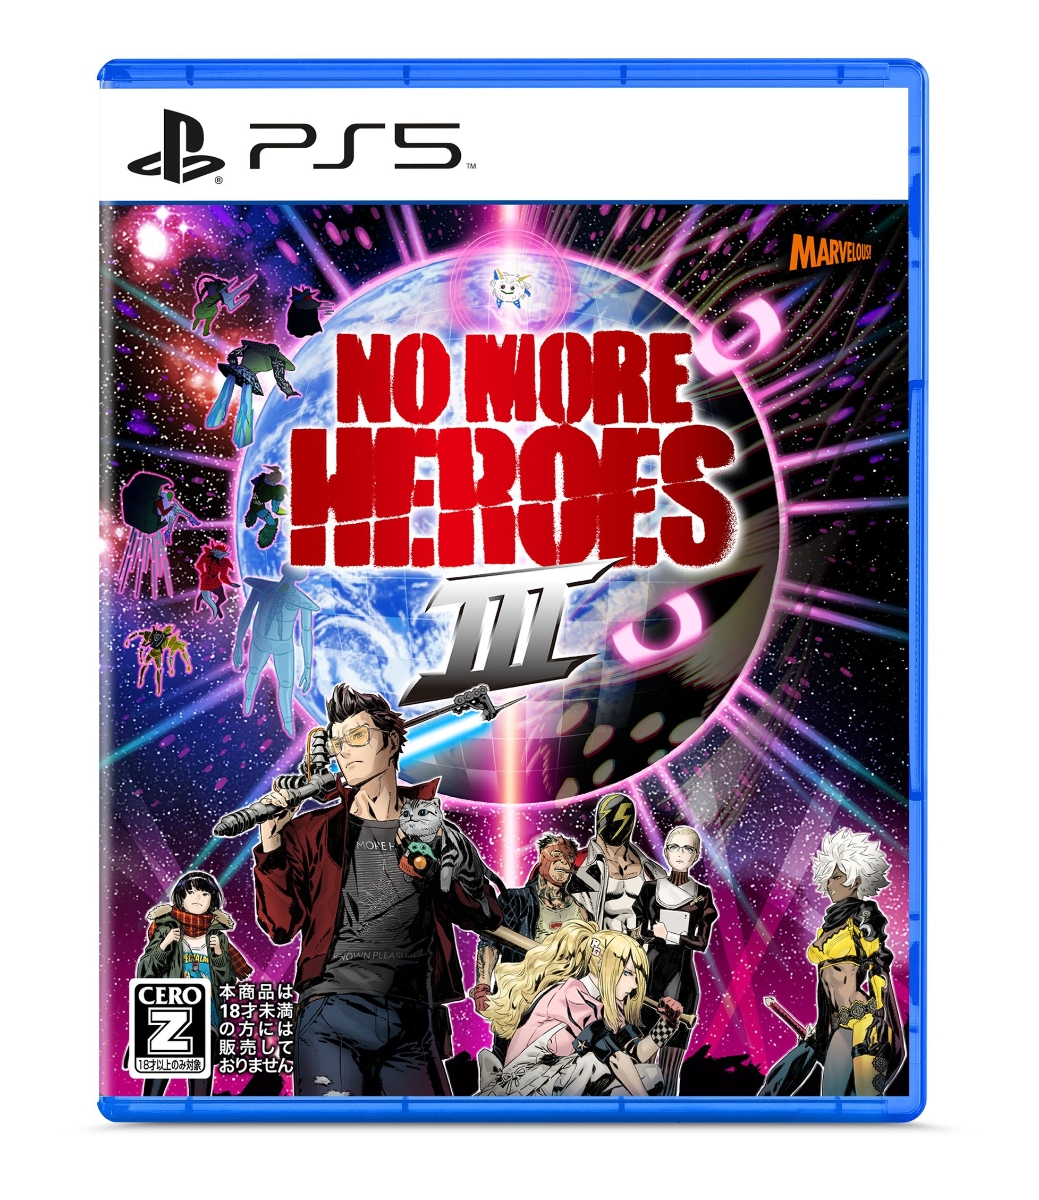 楽天ブックス: No More Heroes 3 KILLION DOLLAR TRILOGY 限定版 